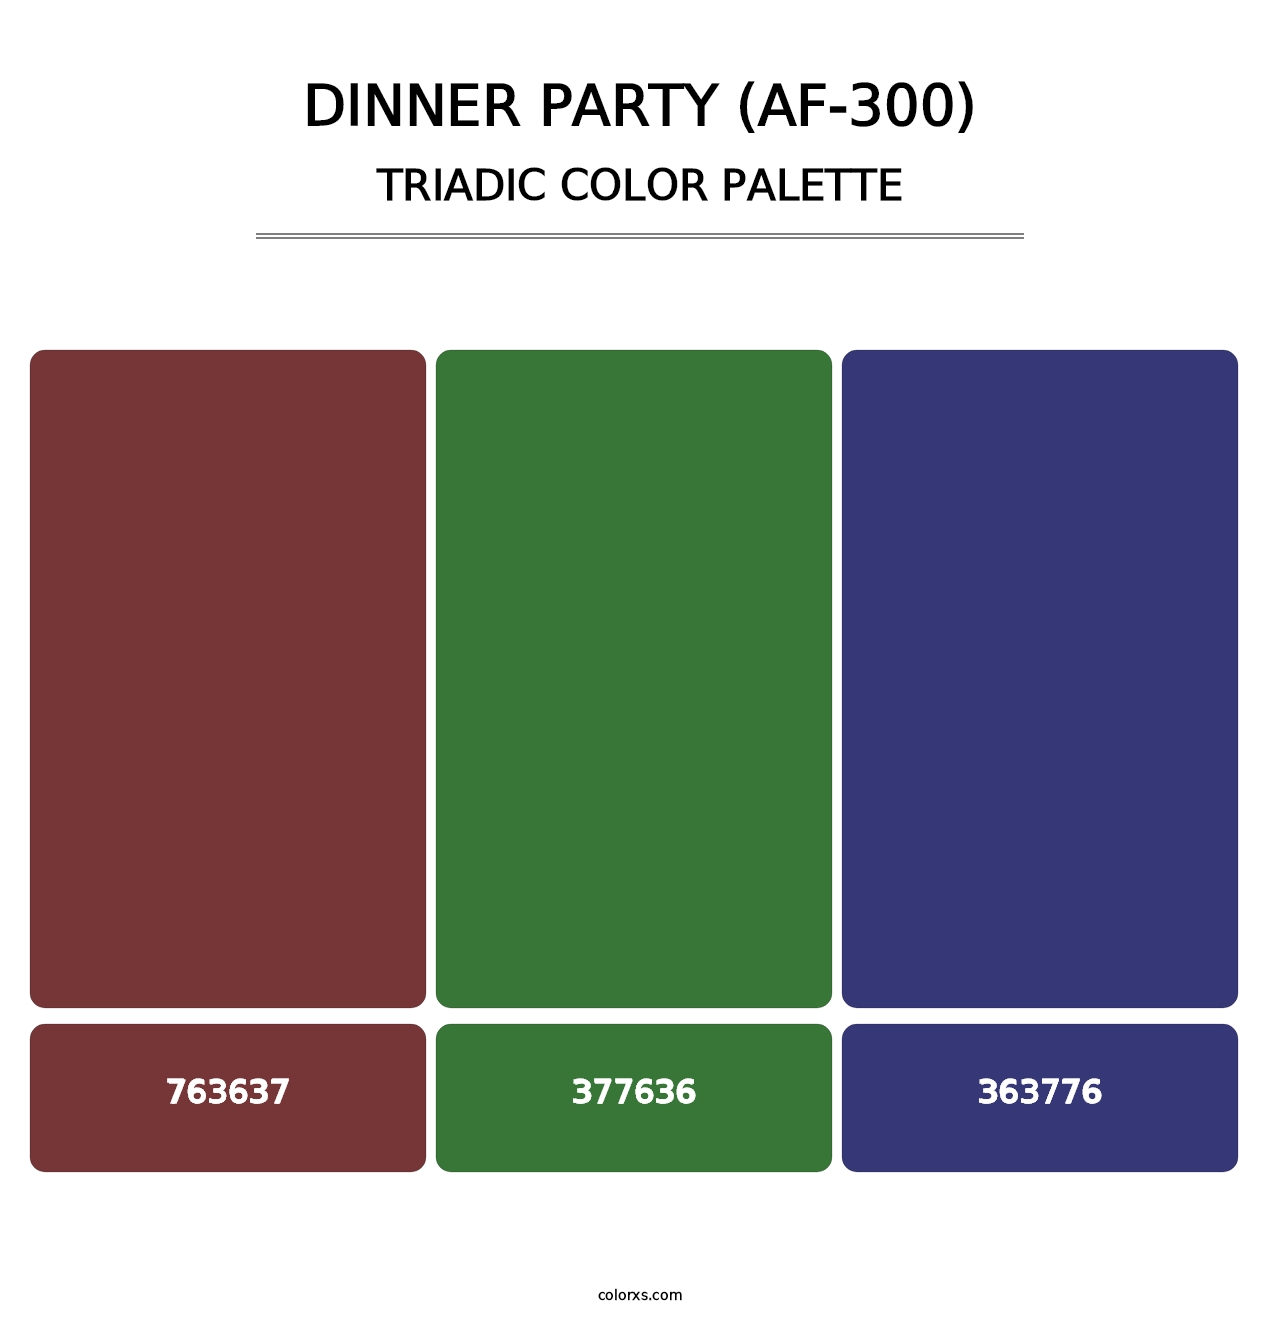 Dinner Party (AF-300) - Triadic Color Palette